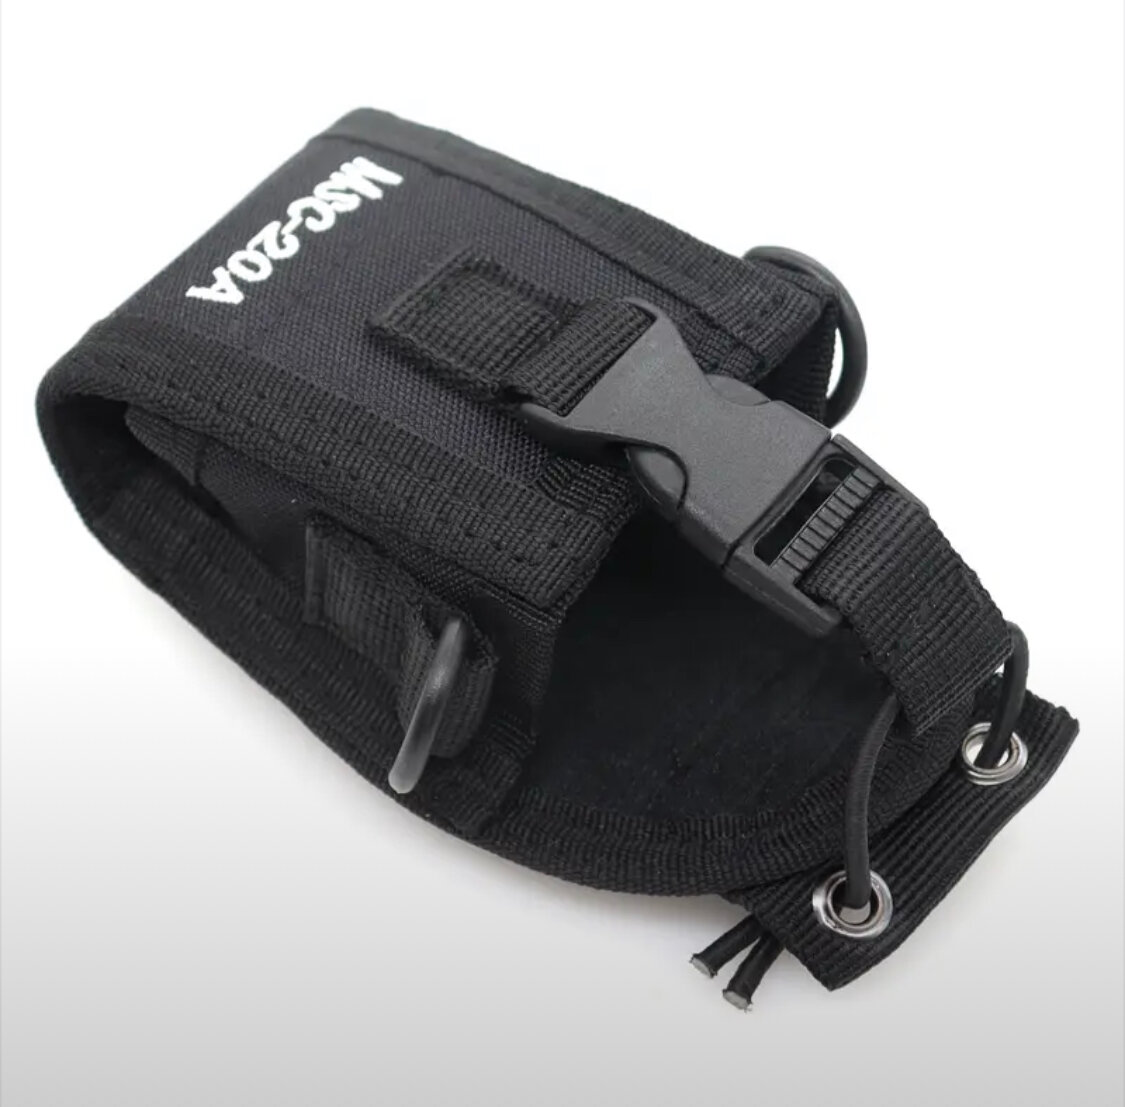 Тактическая сумка чехол для рации универсальный подсумок для радиостанции на лямку mole ремень рюкзак система моле/Черная